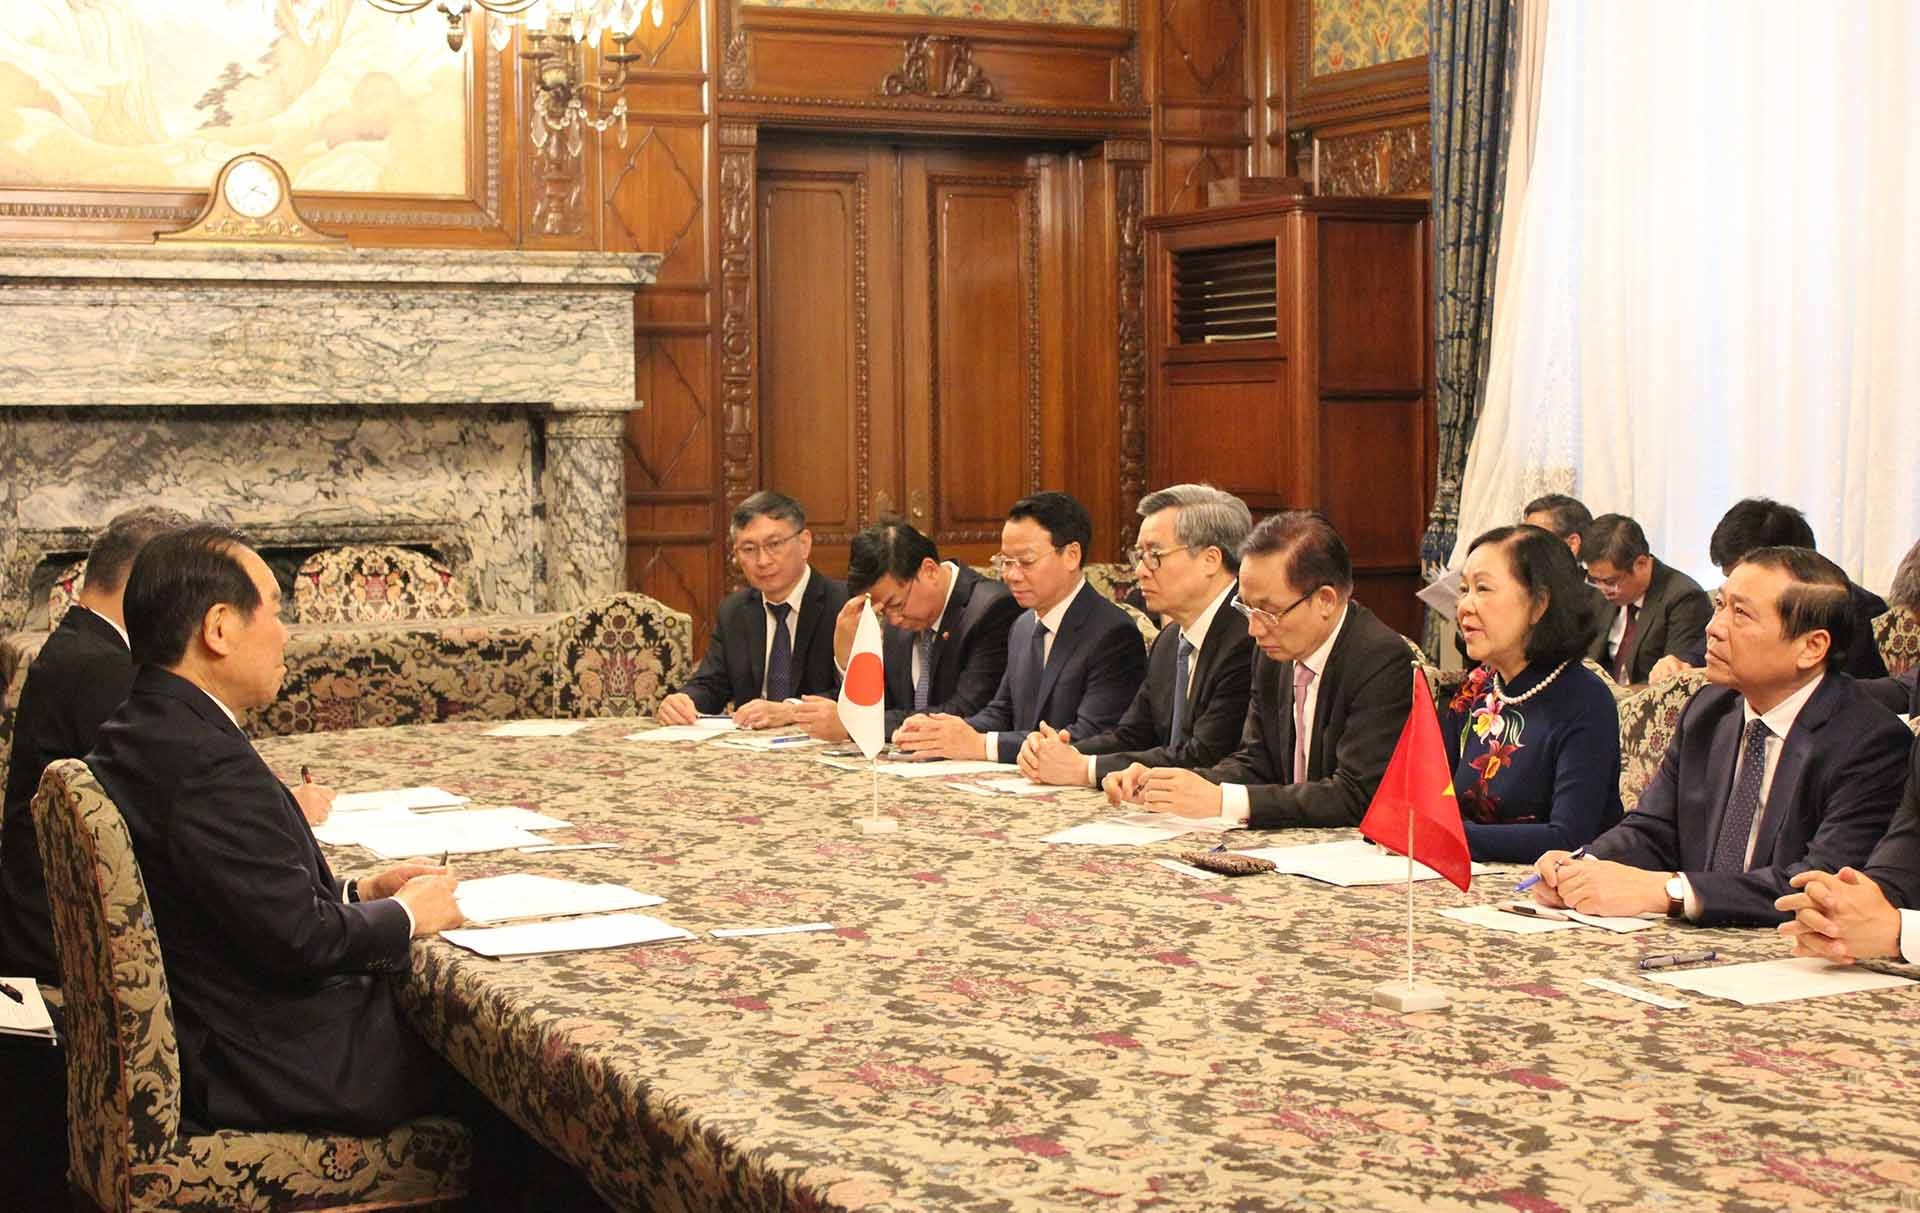 Thường trực Ban Bí thư Trương Thị Mai làm việc với các lãnh đạo cấp cao của Nhật Bản